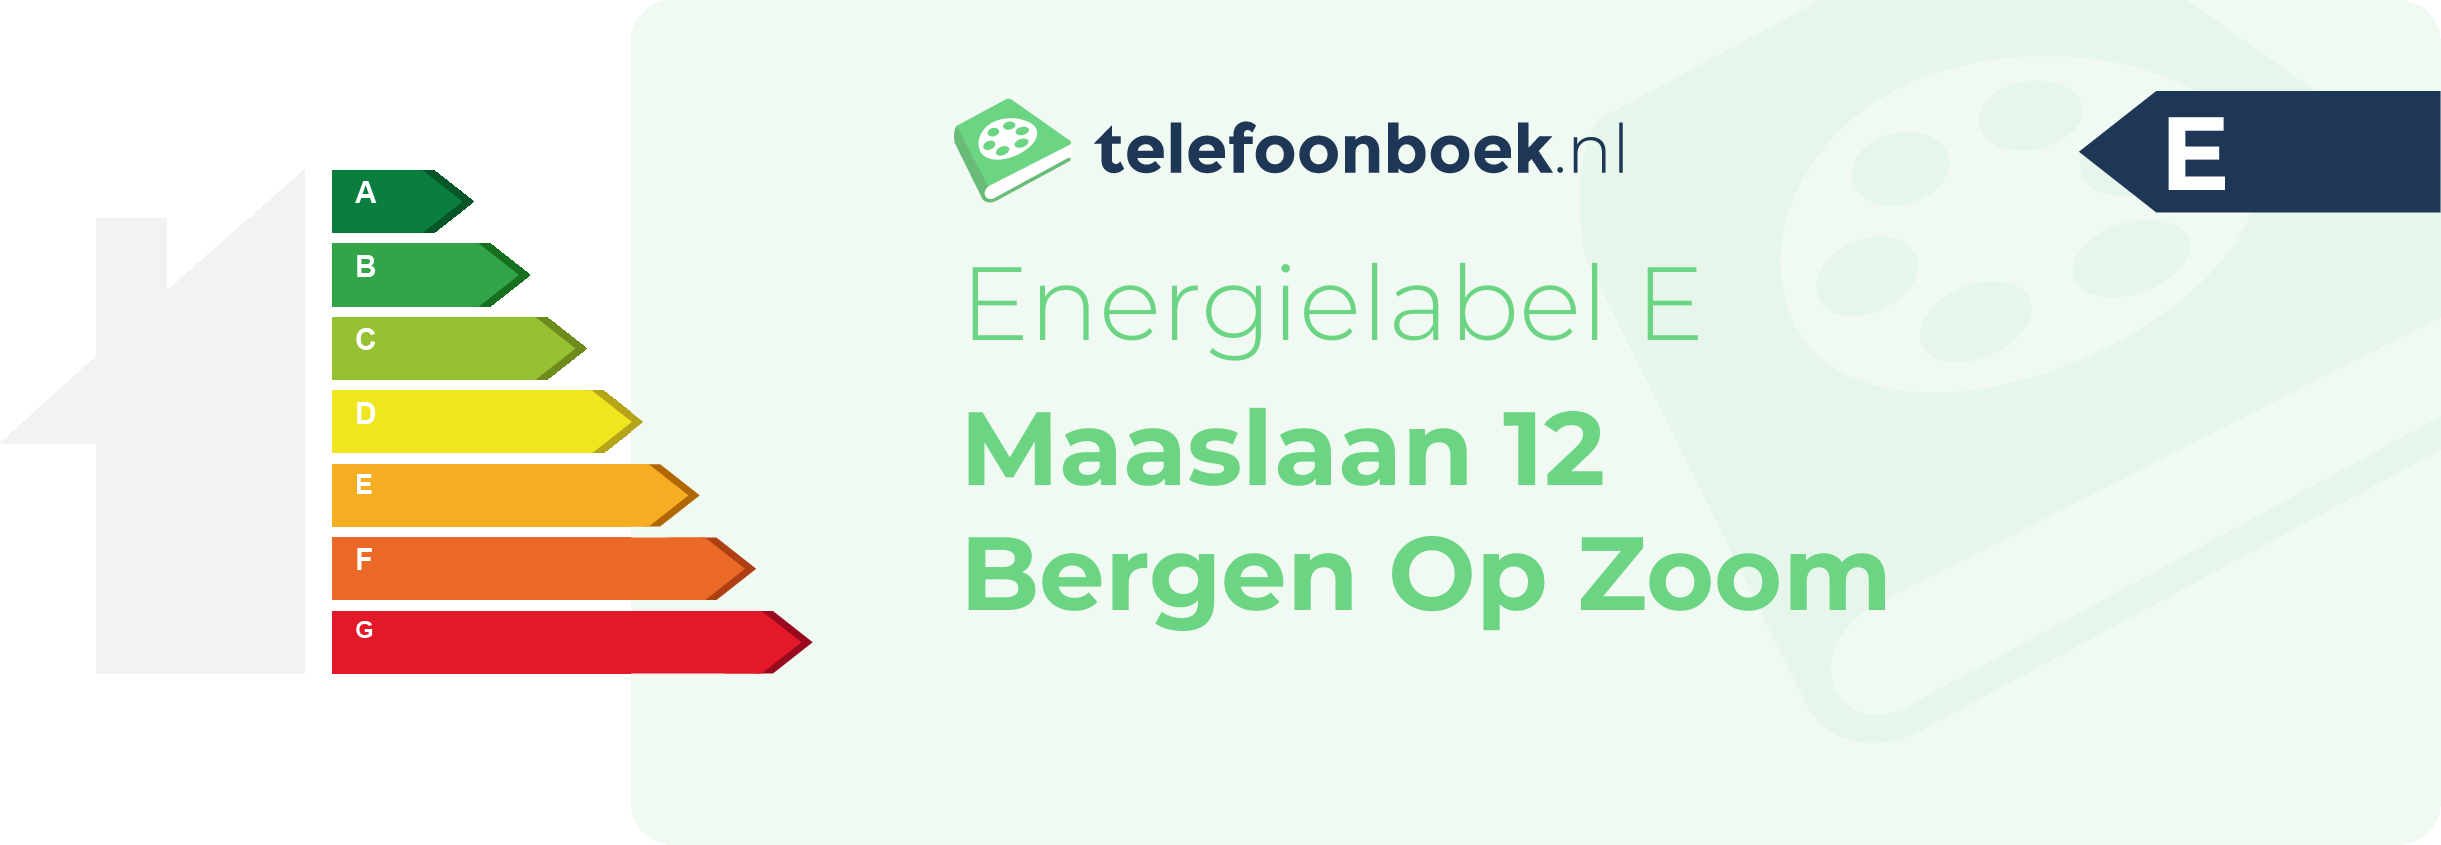 Energielabel Maaslaan 12 Bergen Op Zoom